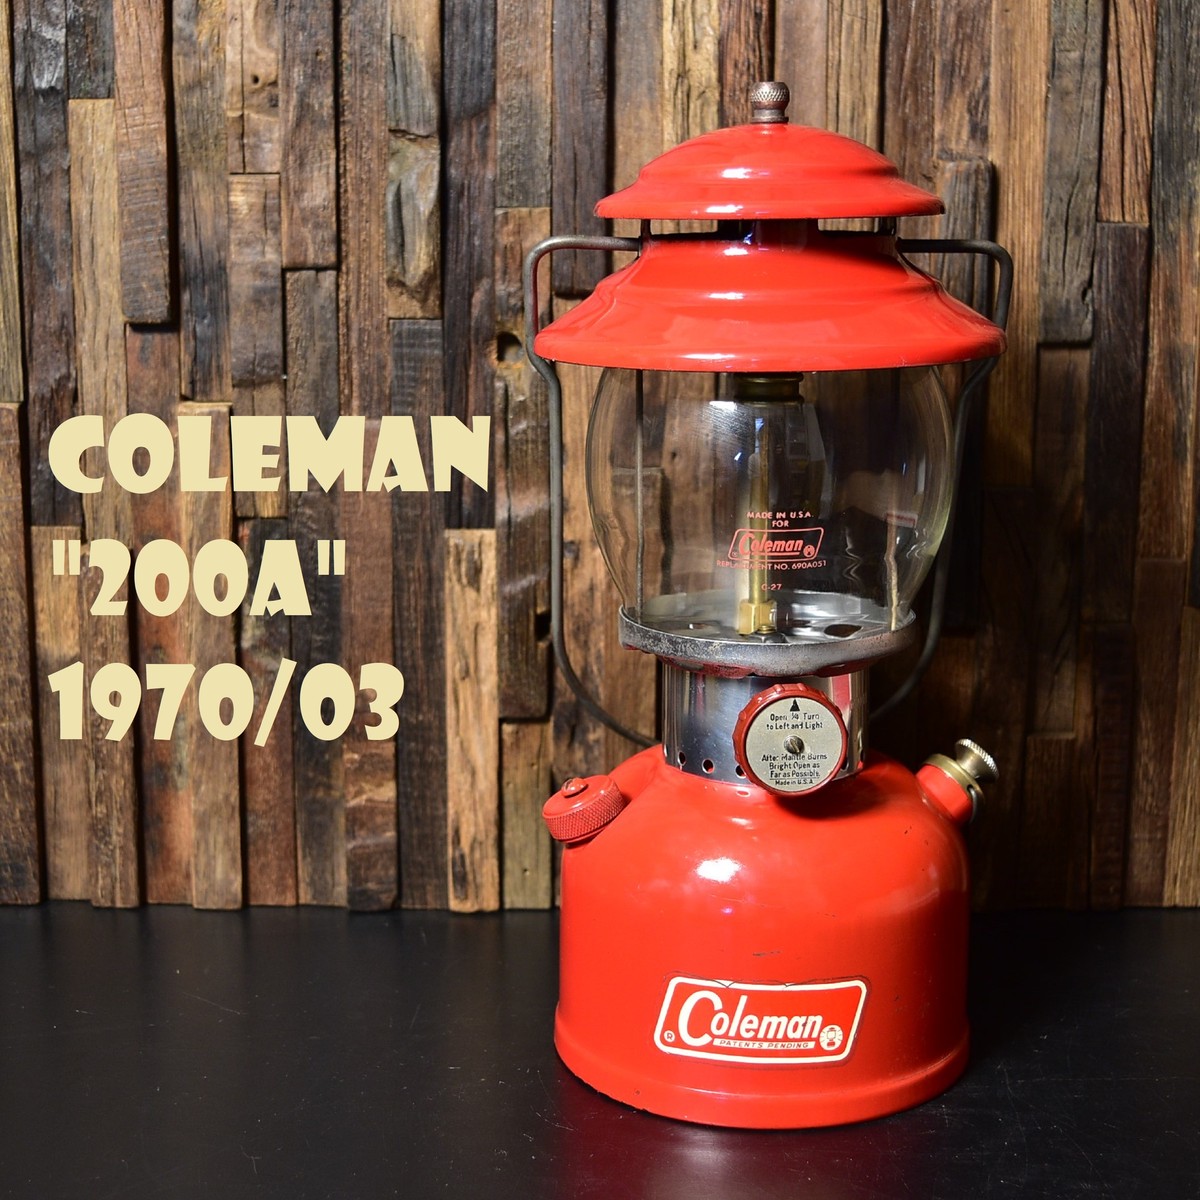 1971年4月製 美品 点火確認済 ホワイトボーダー コールマン200aです。